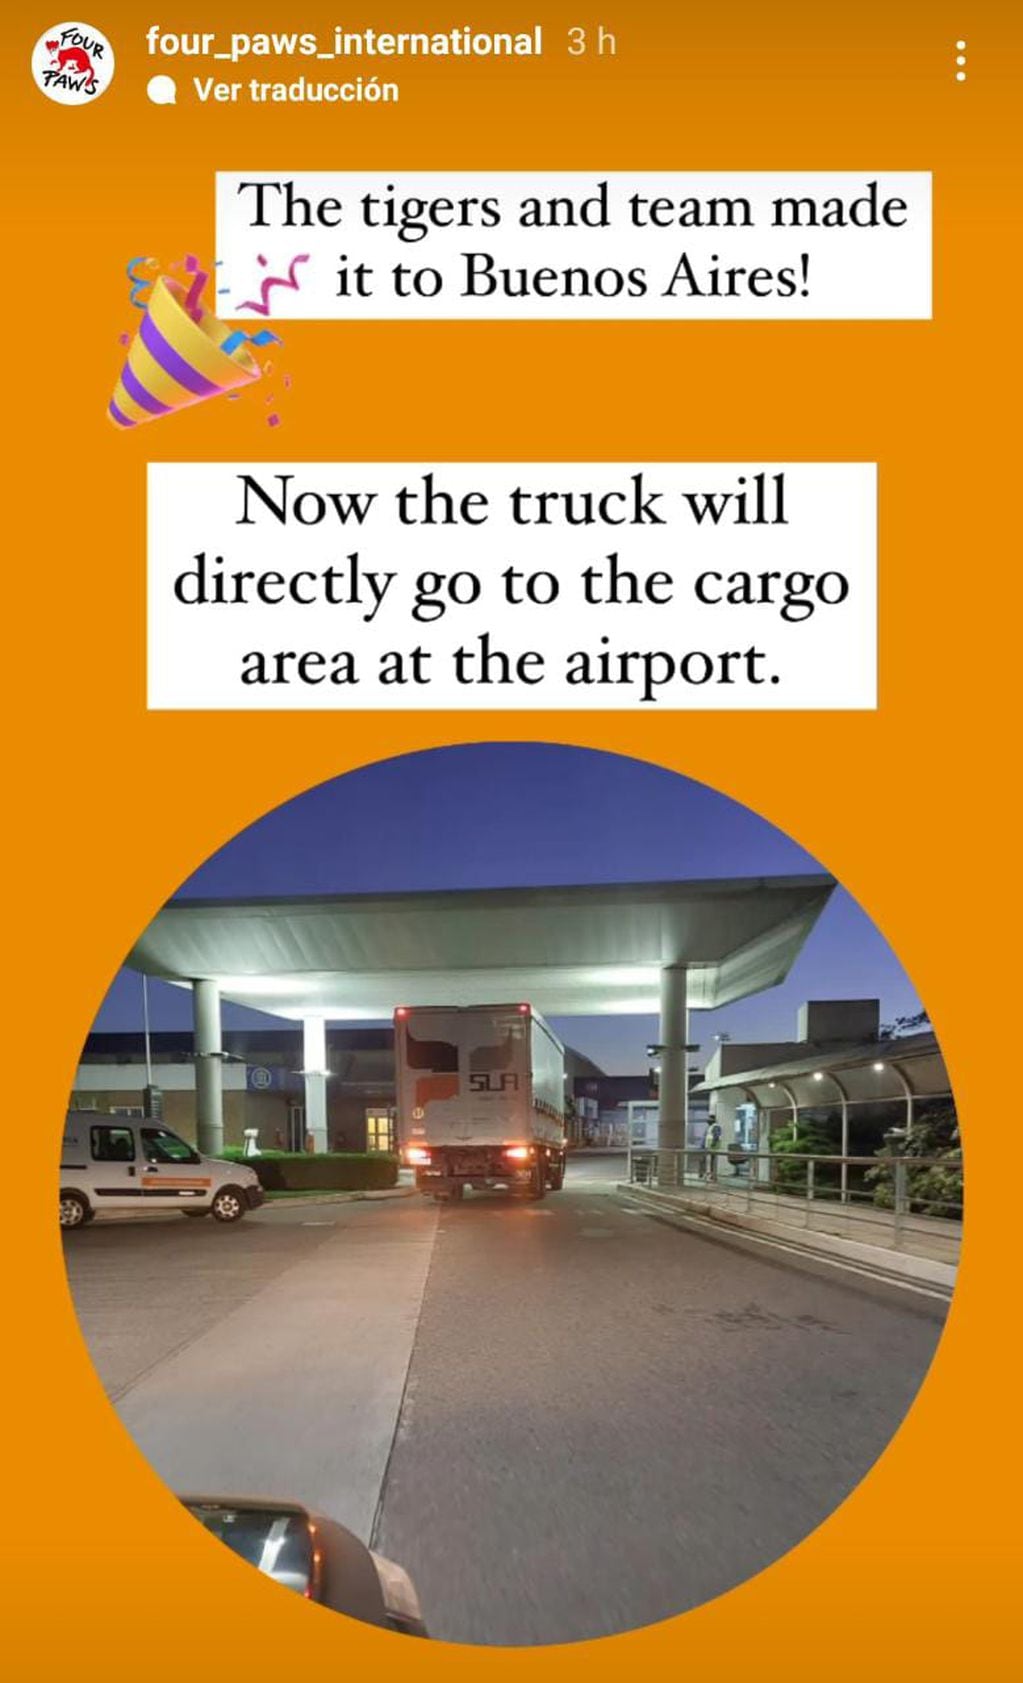 Traducción: "Los tigres y el equipo lograron llegar a Buenos Aires... Ahora el camión se dirigirá a la zona de cargas del aeropuerto".